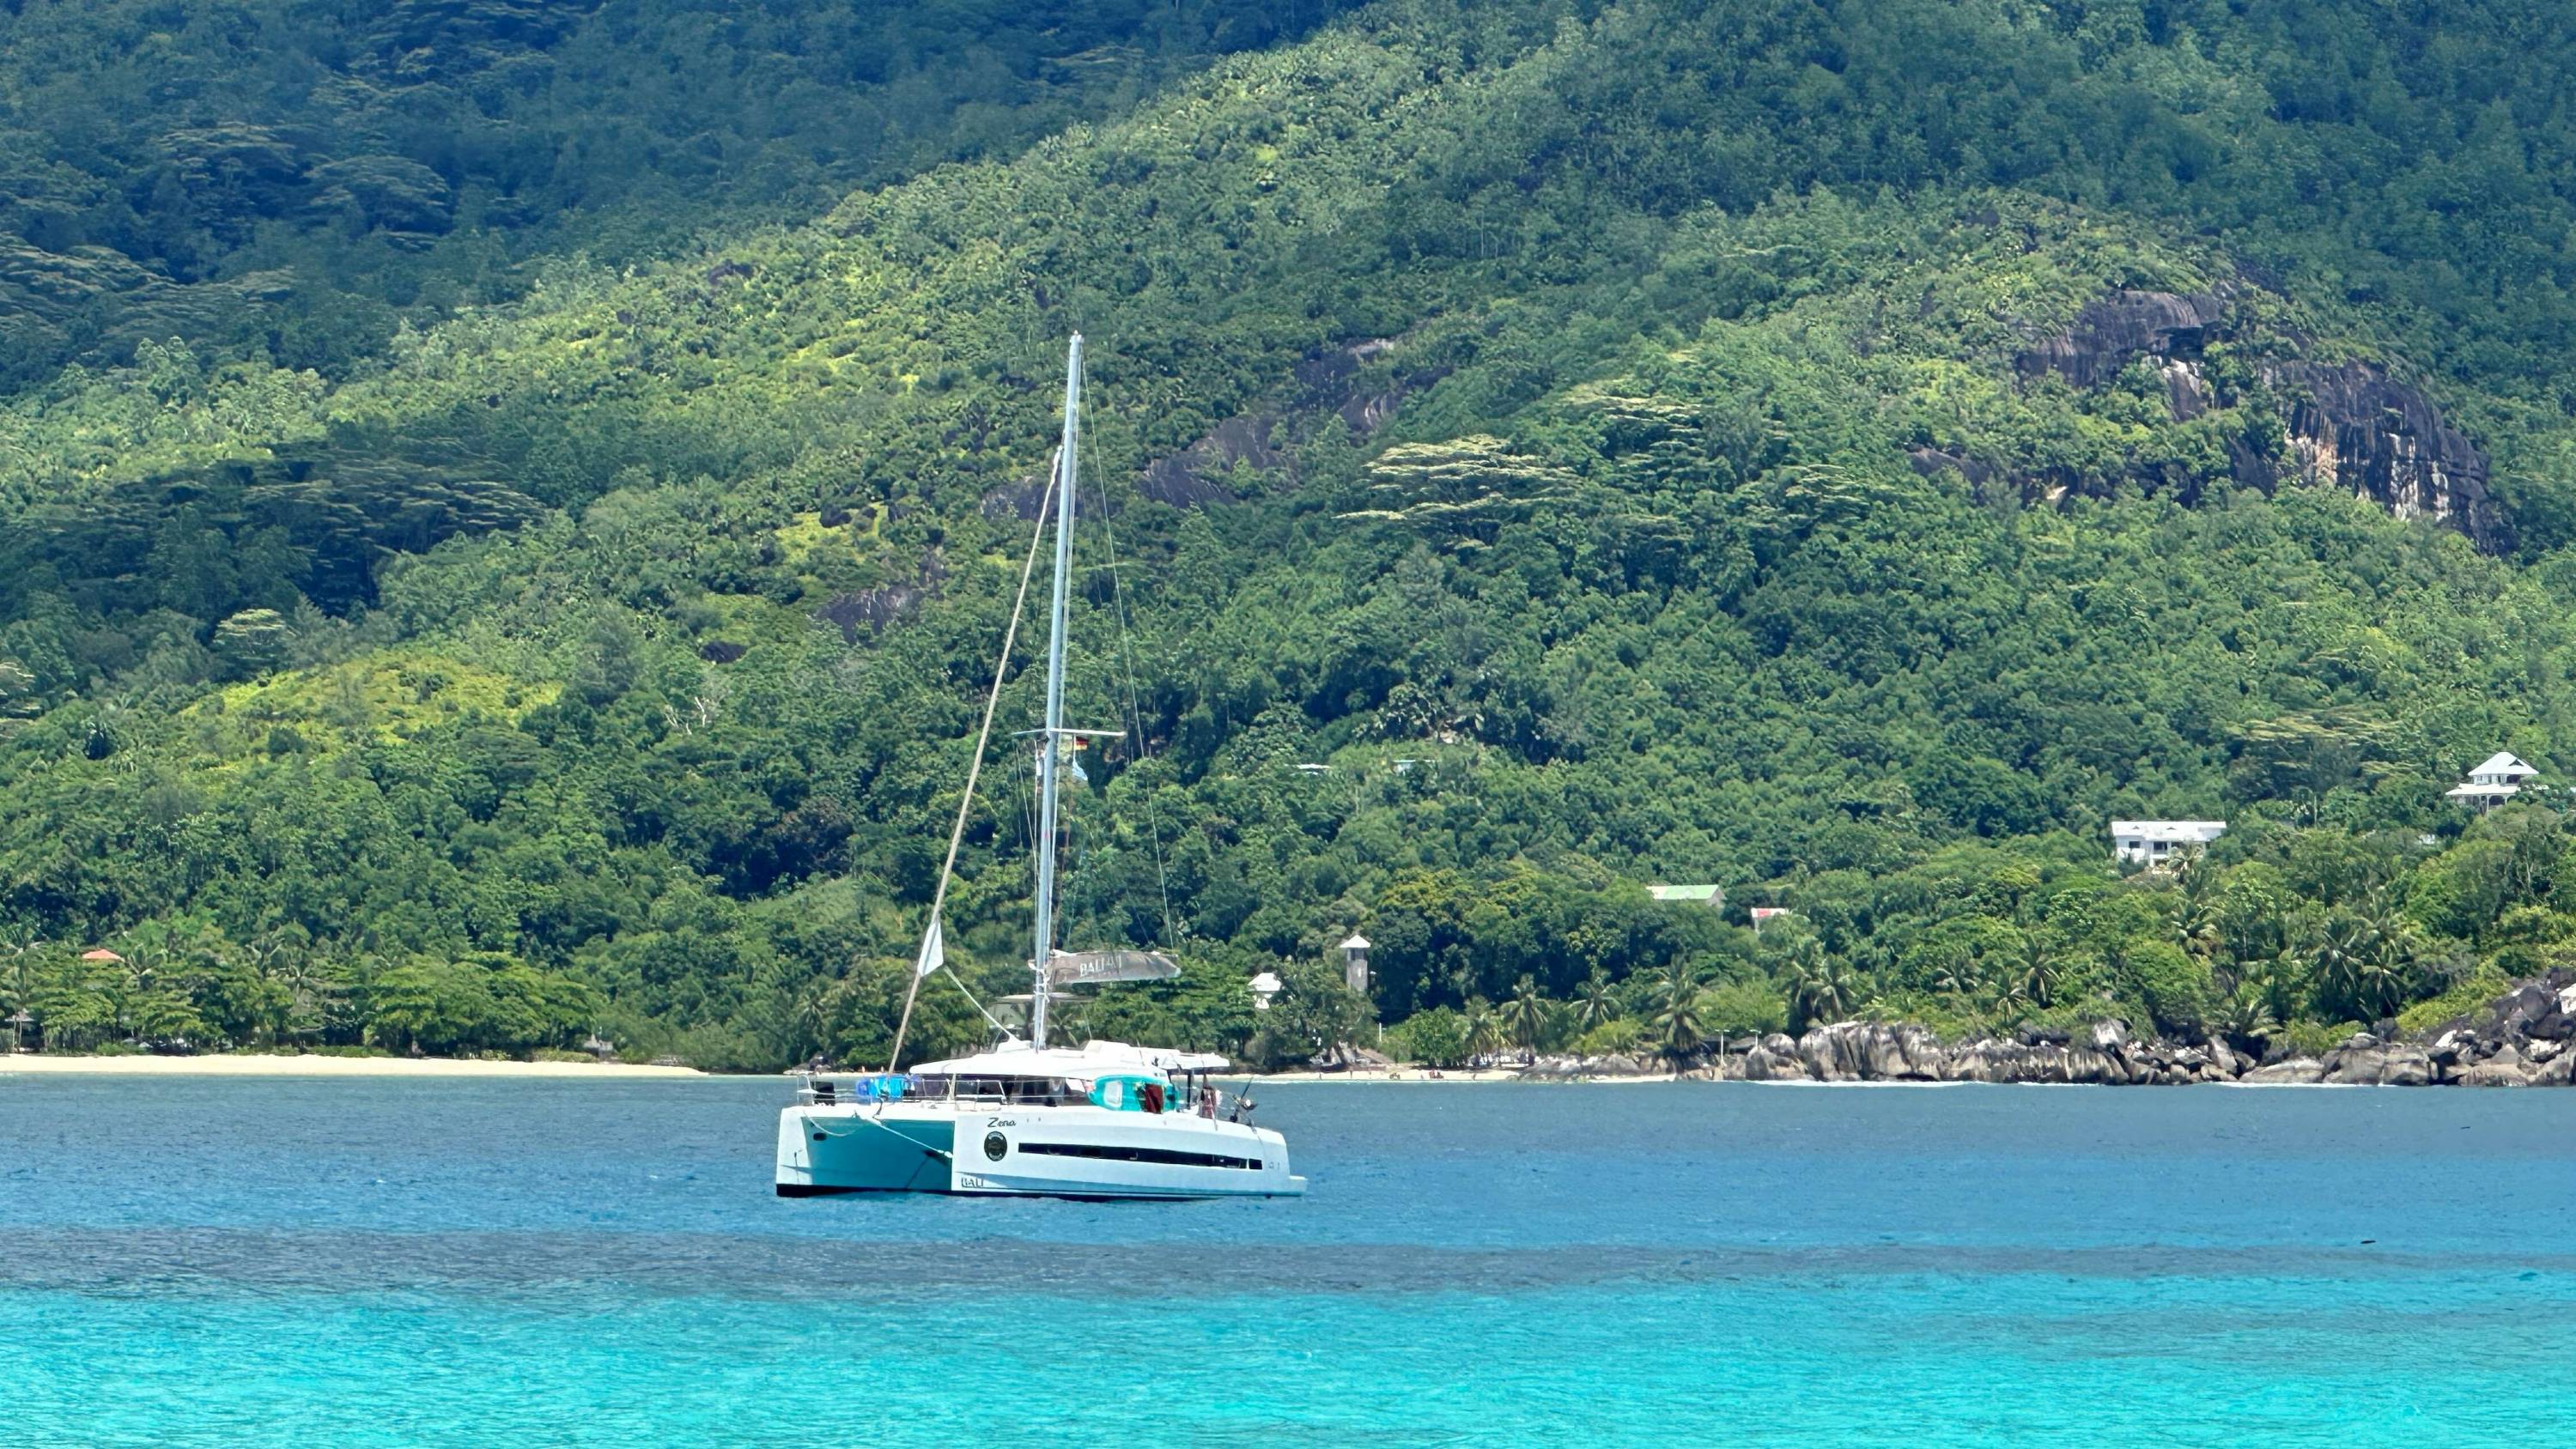 Katamaran vor Anker liegend in türkisblauem Wasser vor einer grünbewachsenen Insel auf den Seychellen